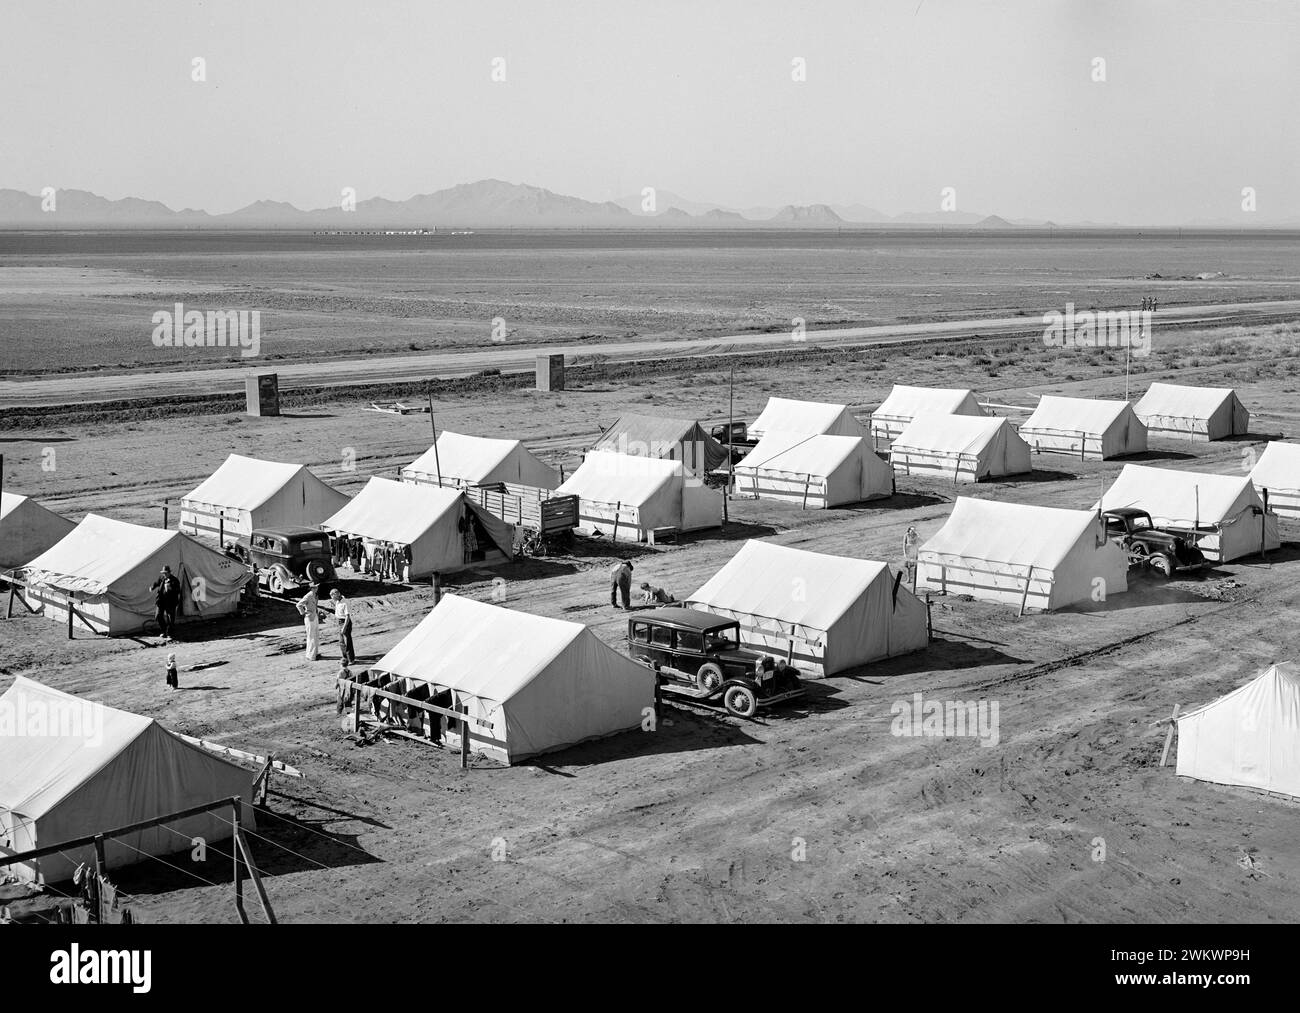 Tentes à la communauté des ouvriers agricoles de la FSA (Farm Security Administration), Friendly Corners, Arizona, États-Unis, Russell Lee, U.S. Farm Security Administration, mars 1942 Banque D'Images